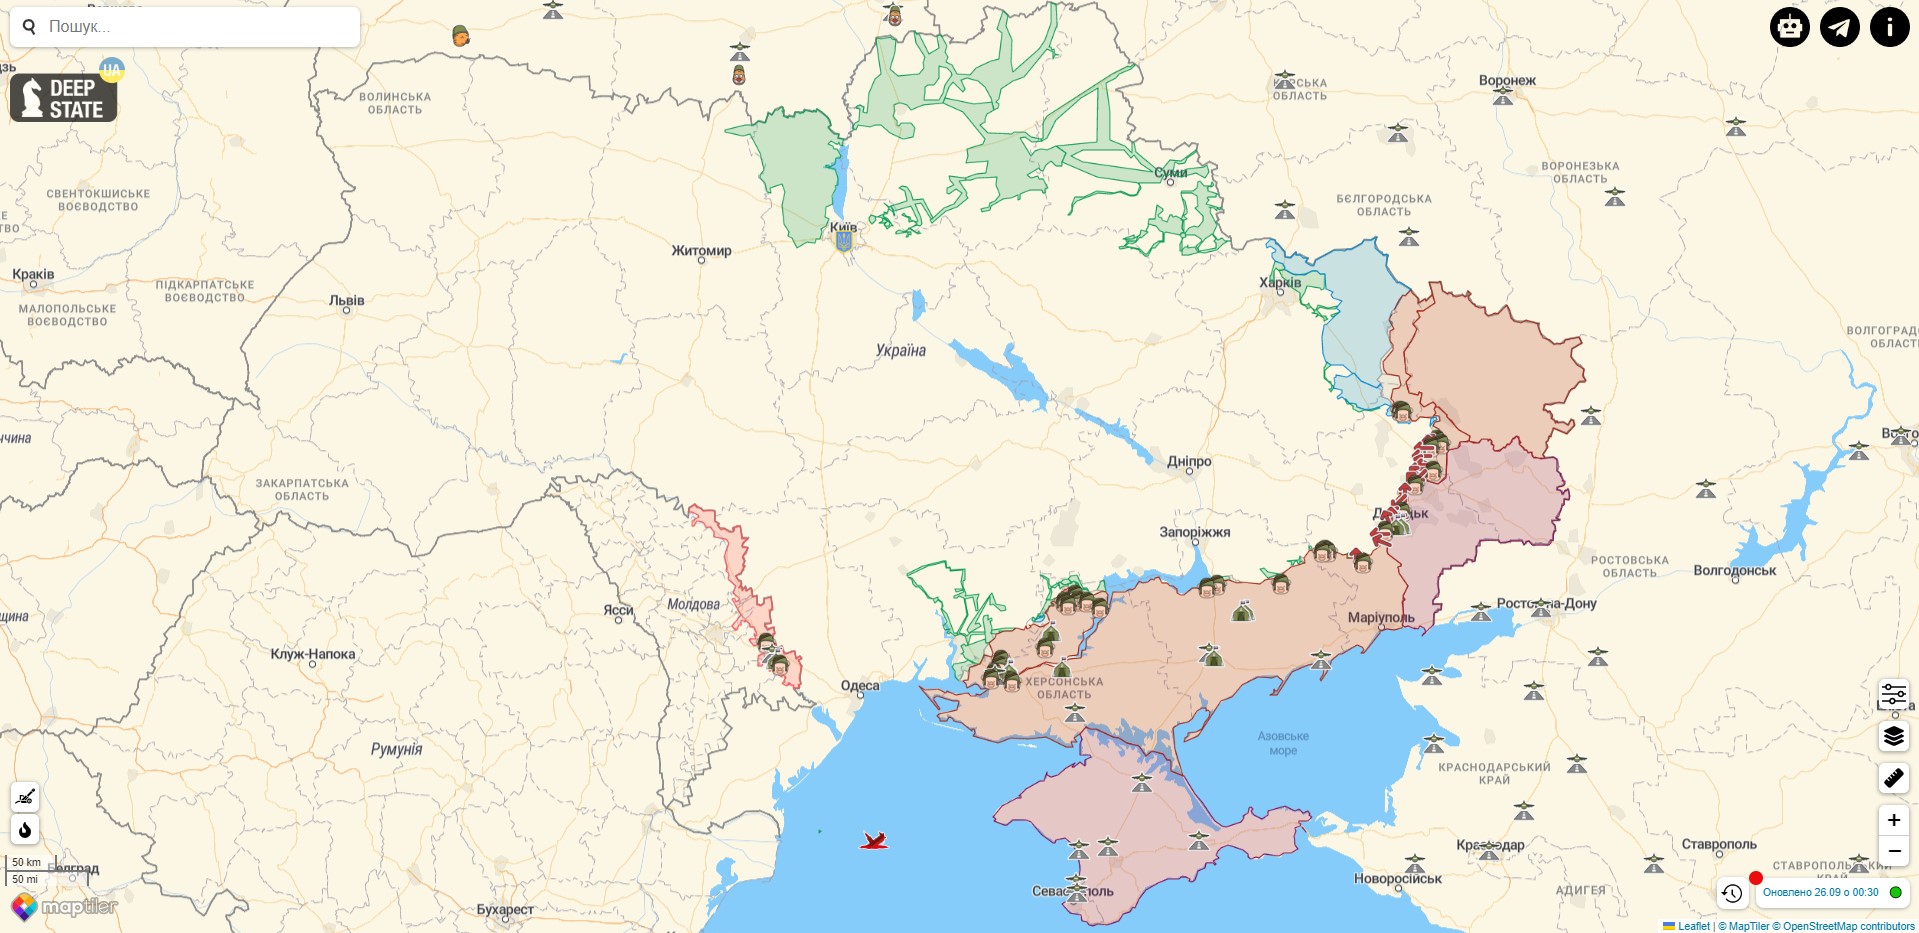 Боевые действия в Украине против РФ на 26 сентября